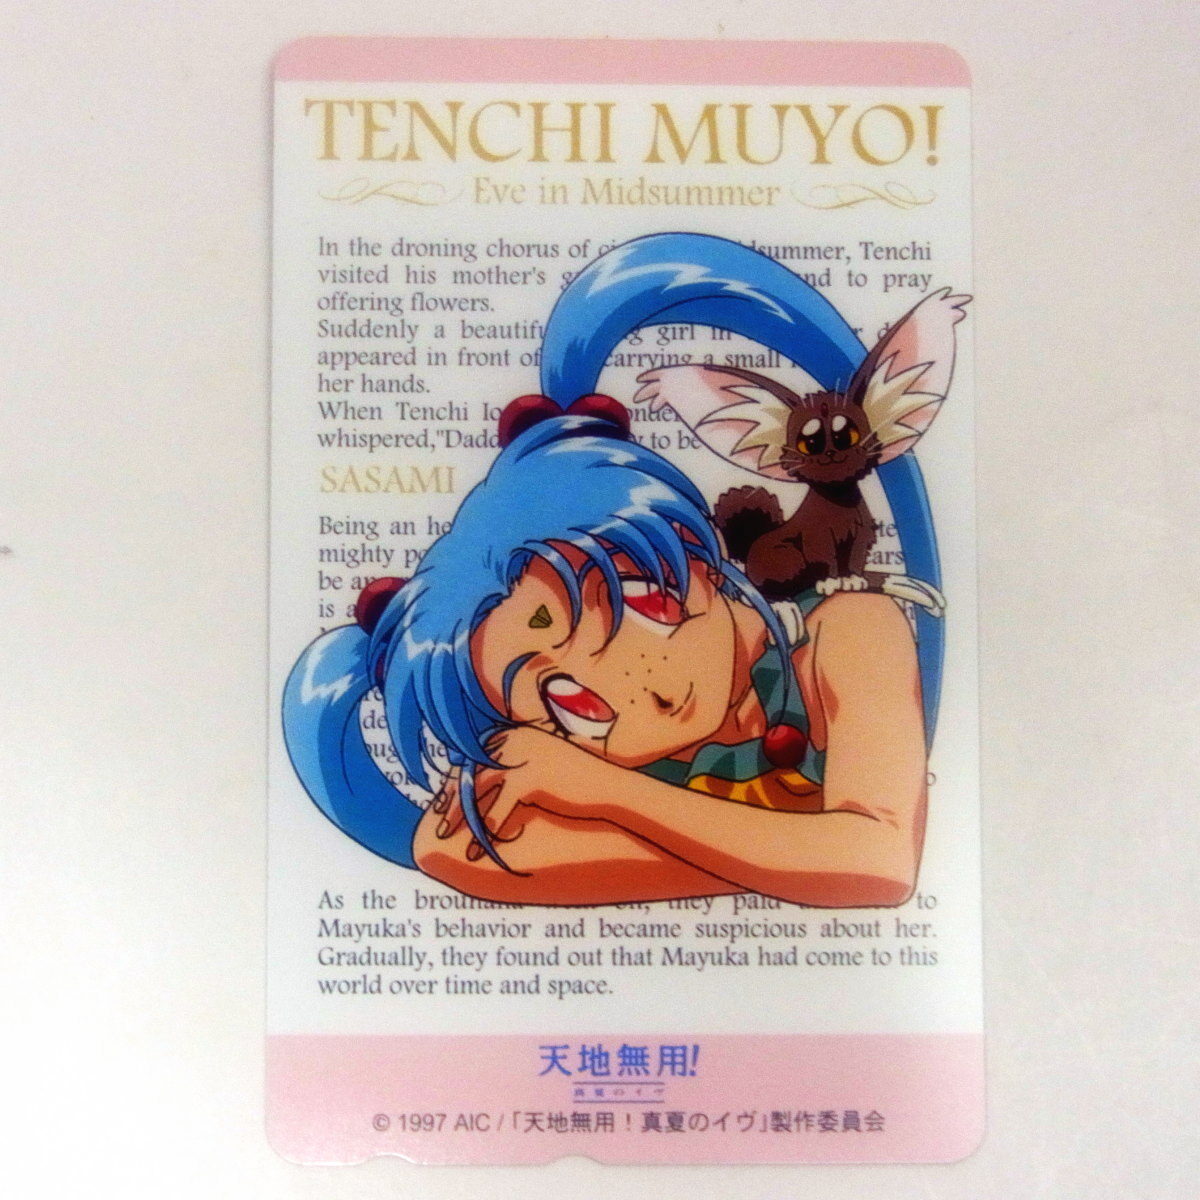  Tenchi Muyo! телефонная карточка 50 раз не использовался телефонная карточка bentenzebla:1302220700098